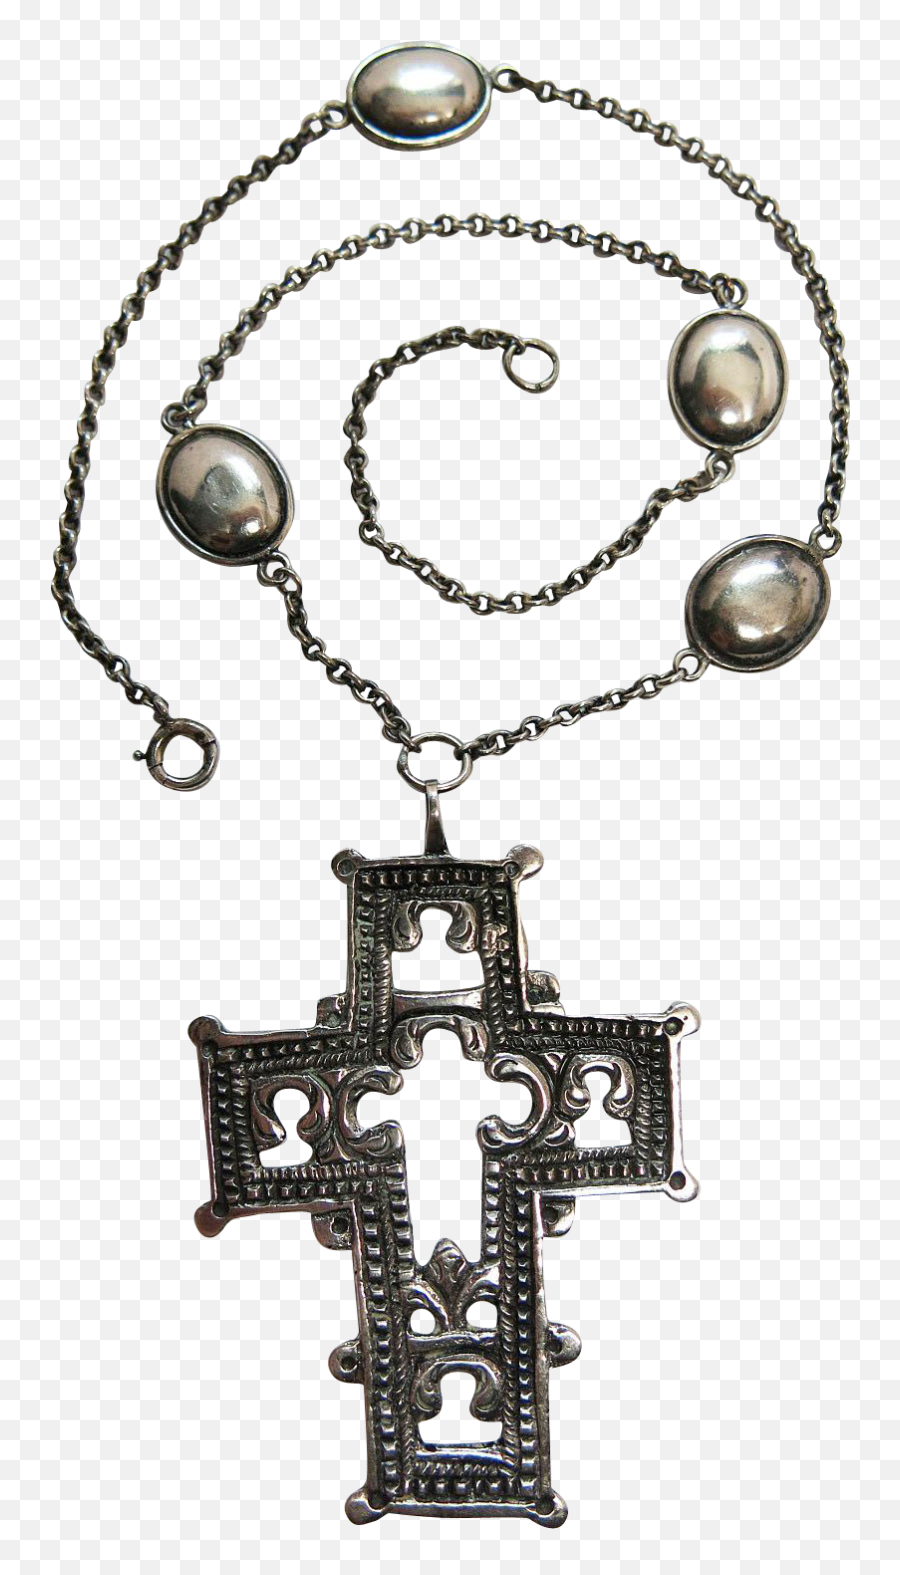 Antique Rococo Period Swiss Silver Cross Pendant Necklace - Necklace Png,Cross Necklace Png